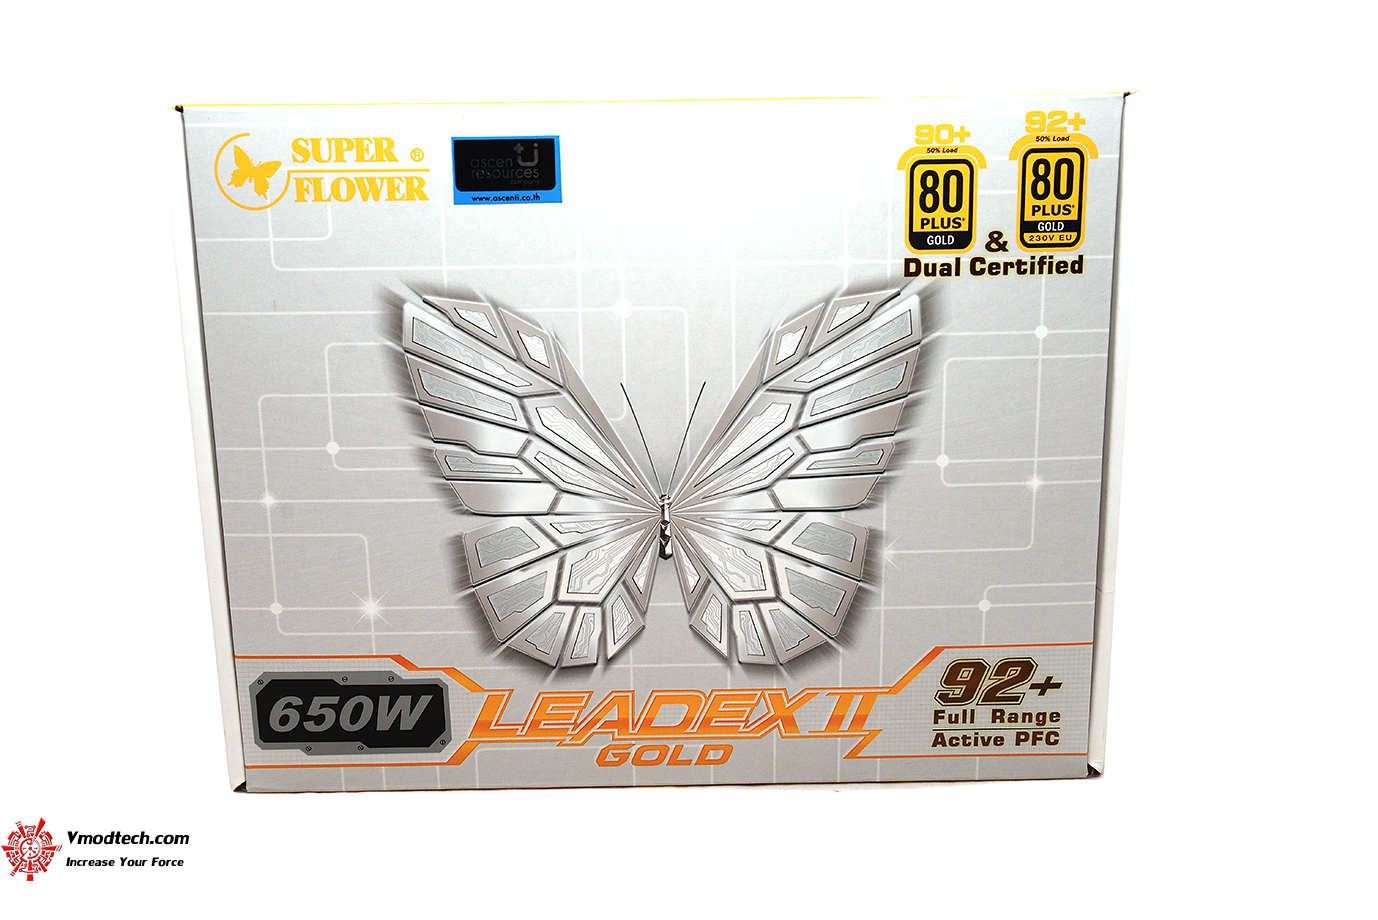 dsc 5944 SUPER FLOWER LEADEX II GOLD 650W REVIEW